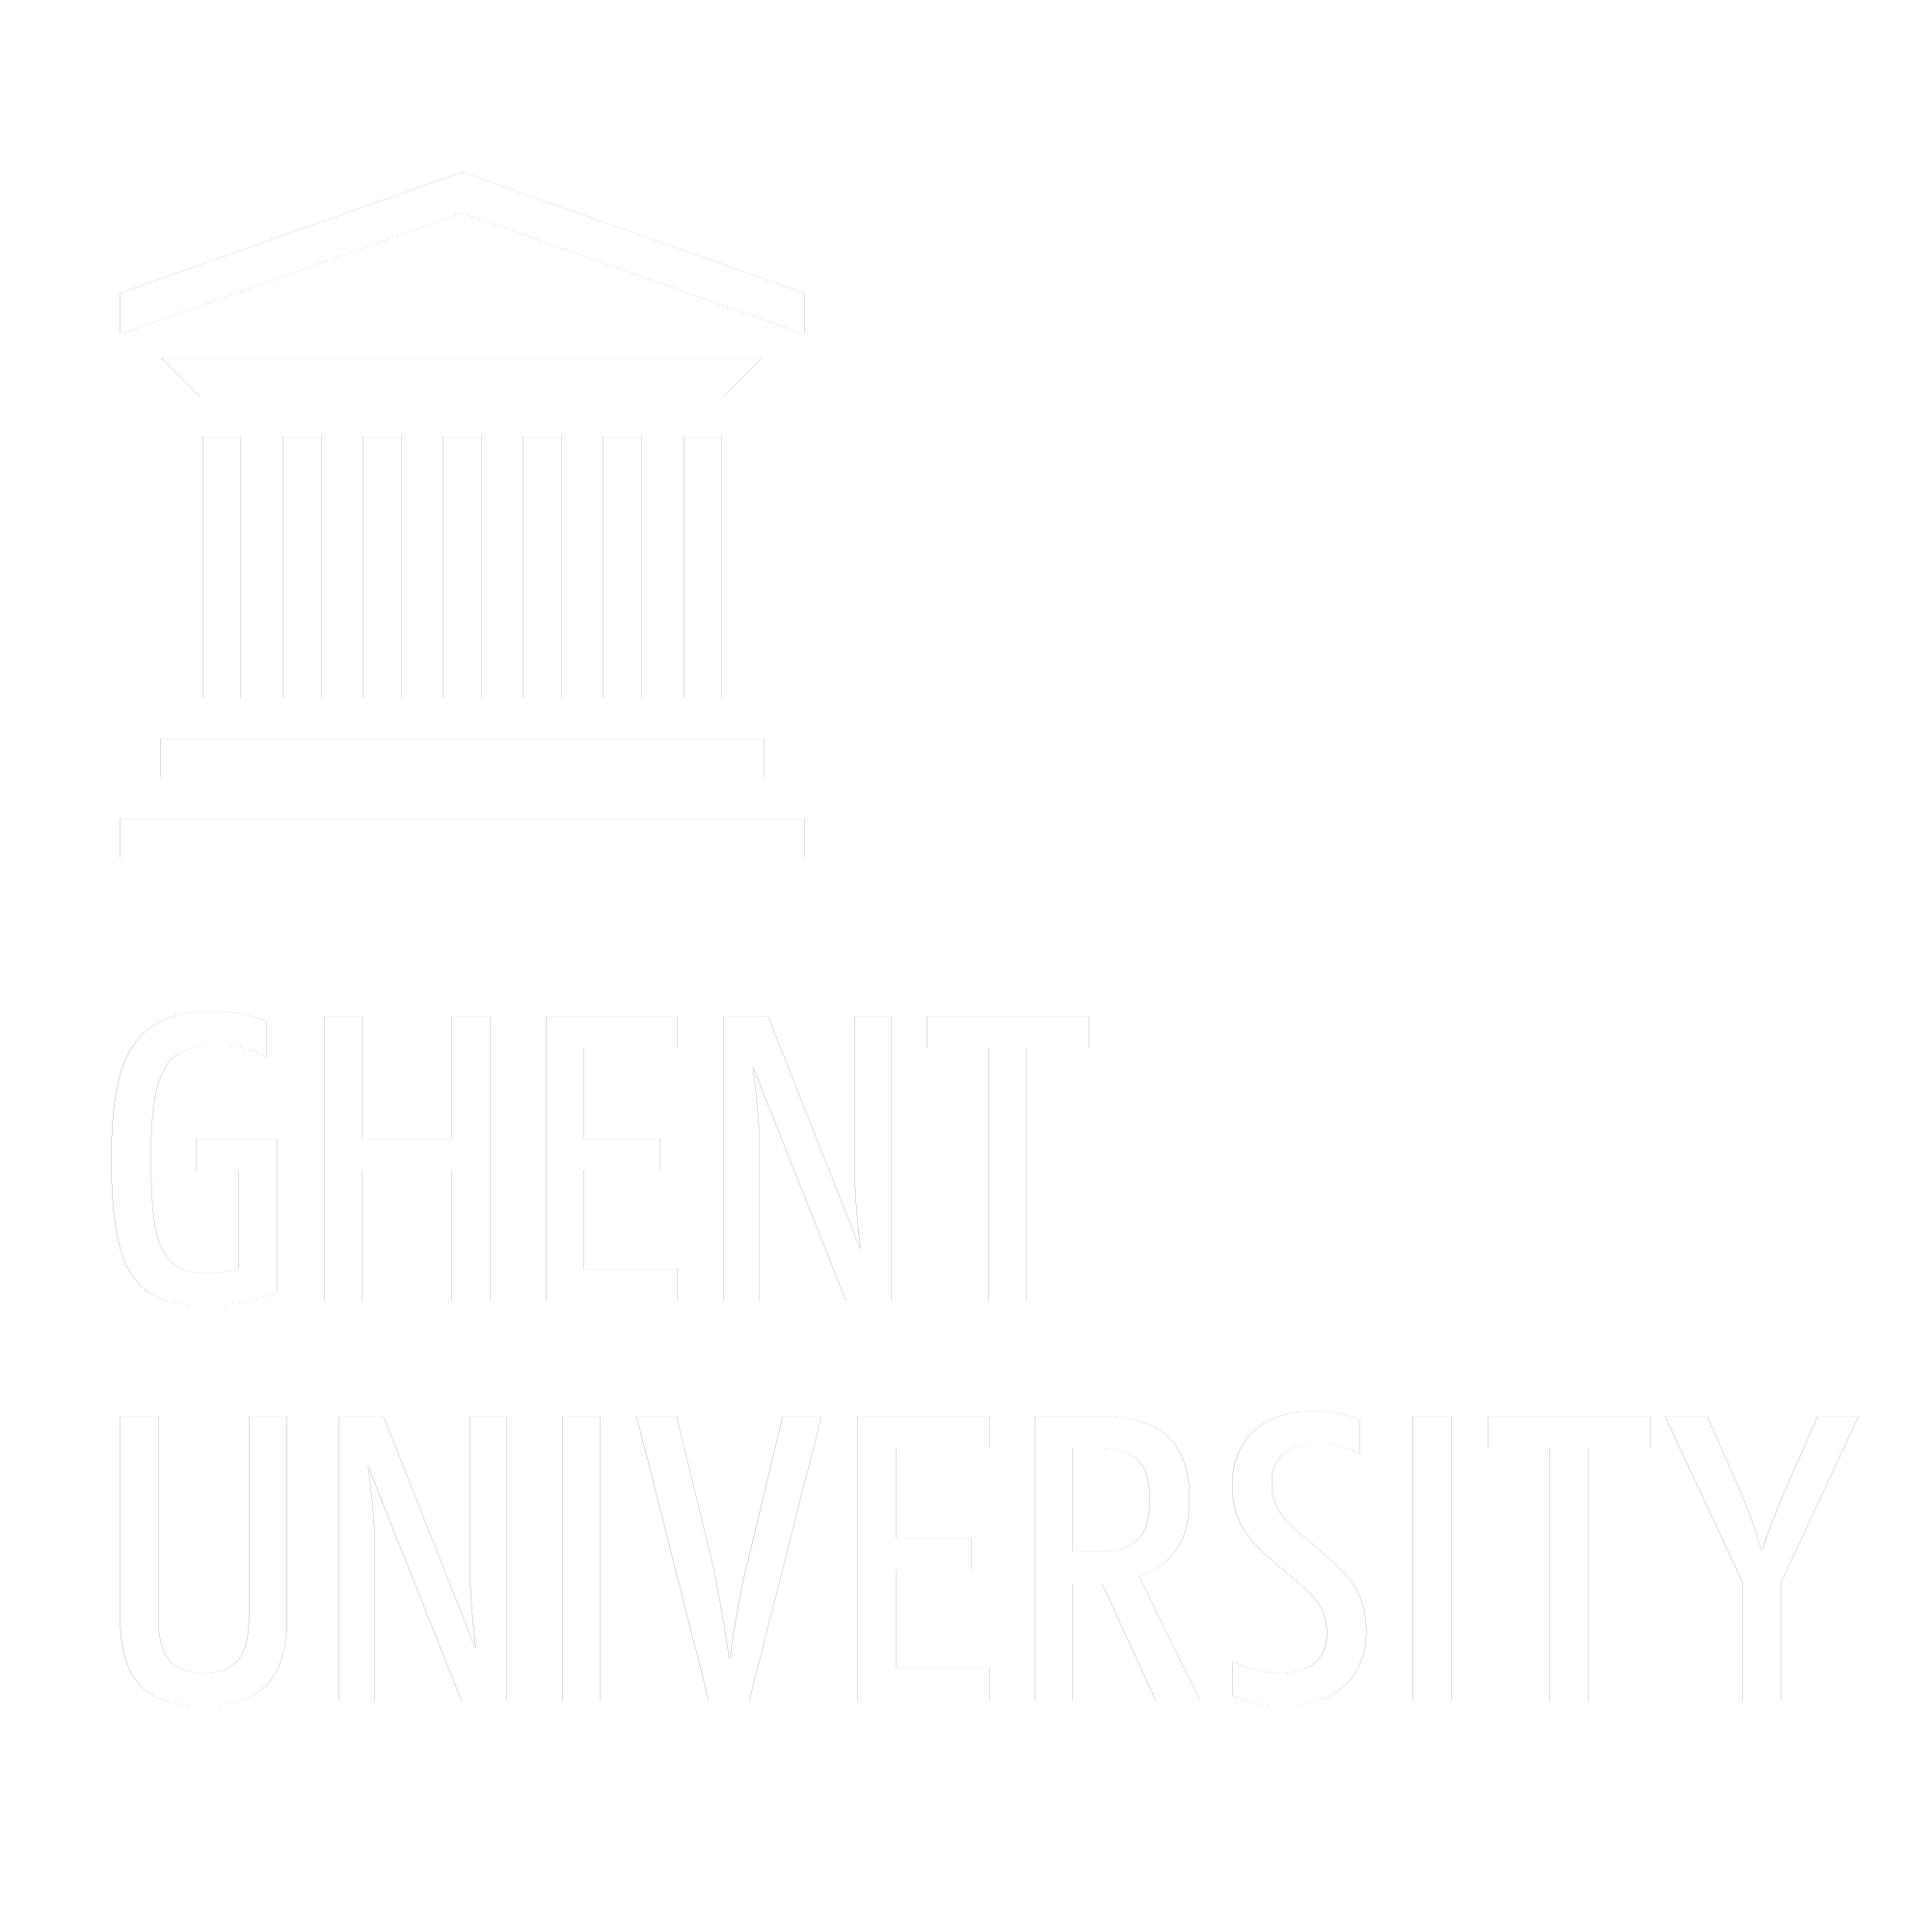 UGent Logo